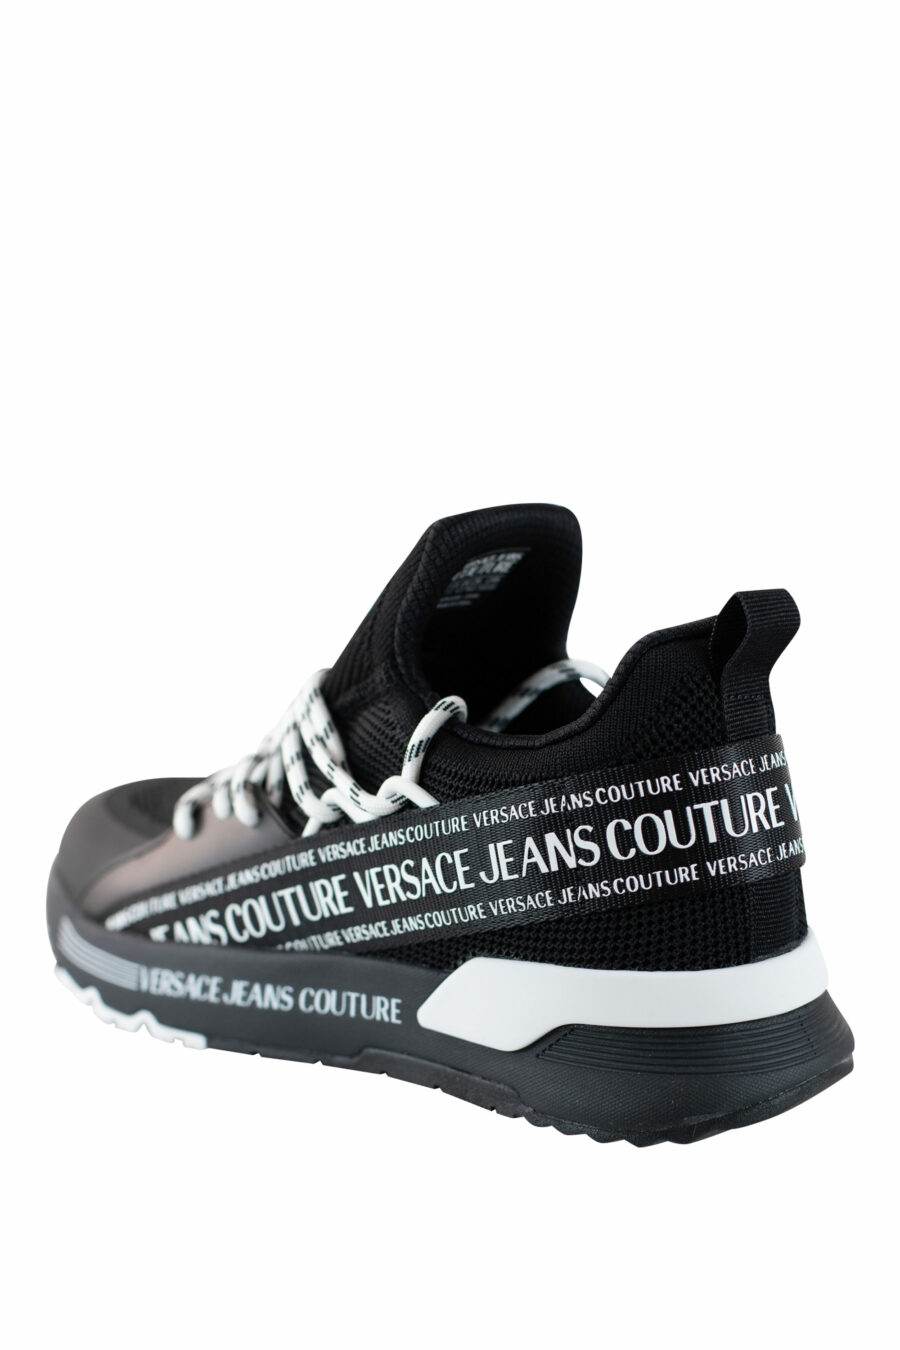 Zapatillas negras "dynamic" estilo calcetin con logo en cinta - IMG 4523